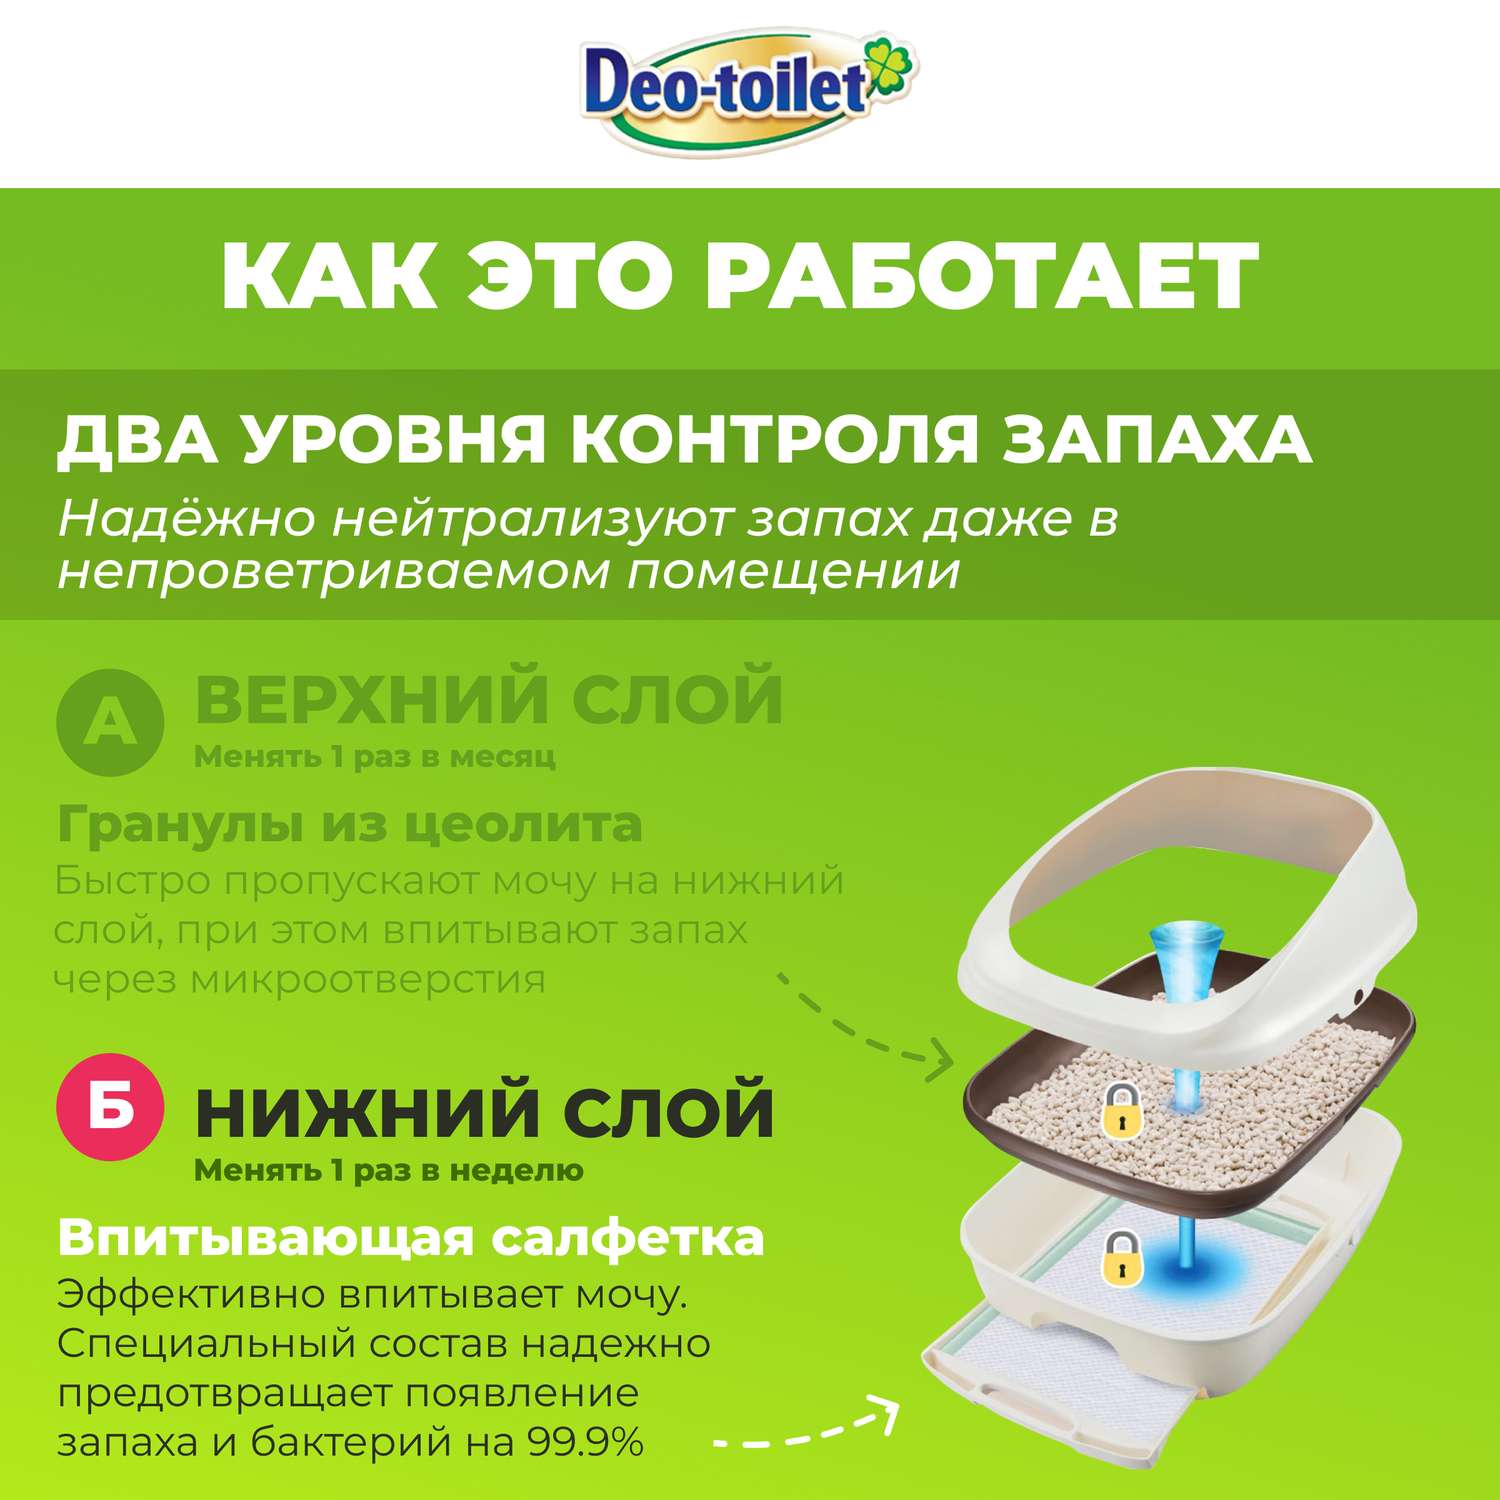 Антибактериальная салфетка Unicharm дезодорирующая для cистемных туалетов с ароматом душистого мыла 10 шт - фото 3